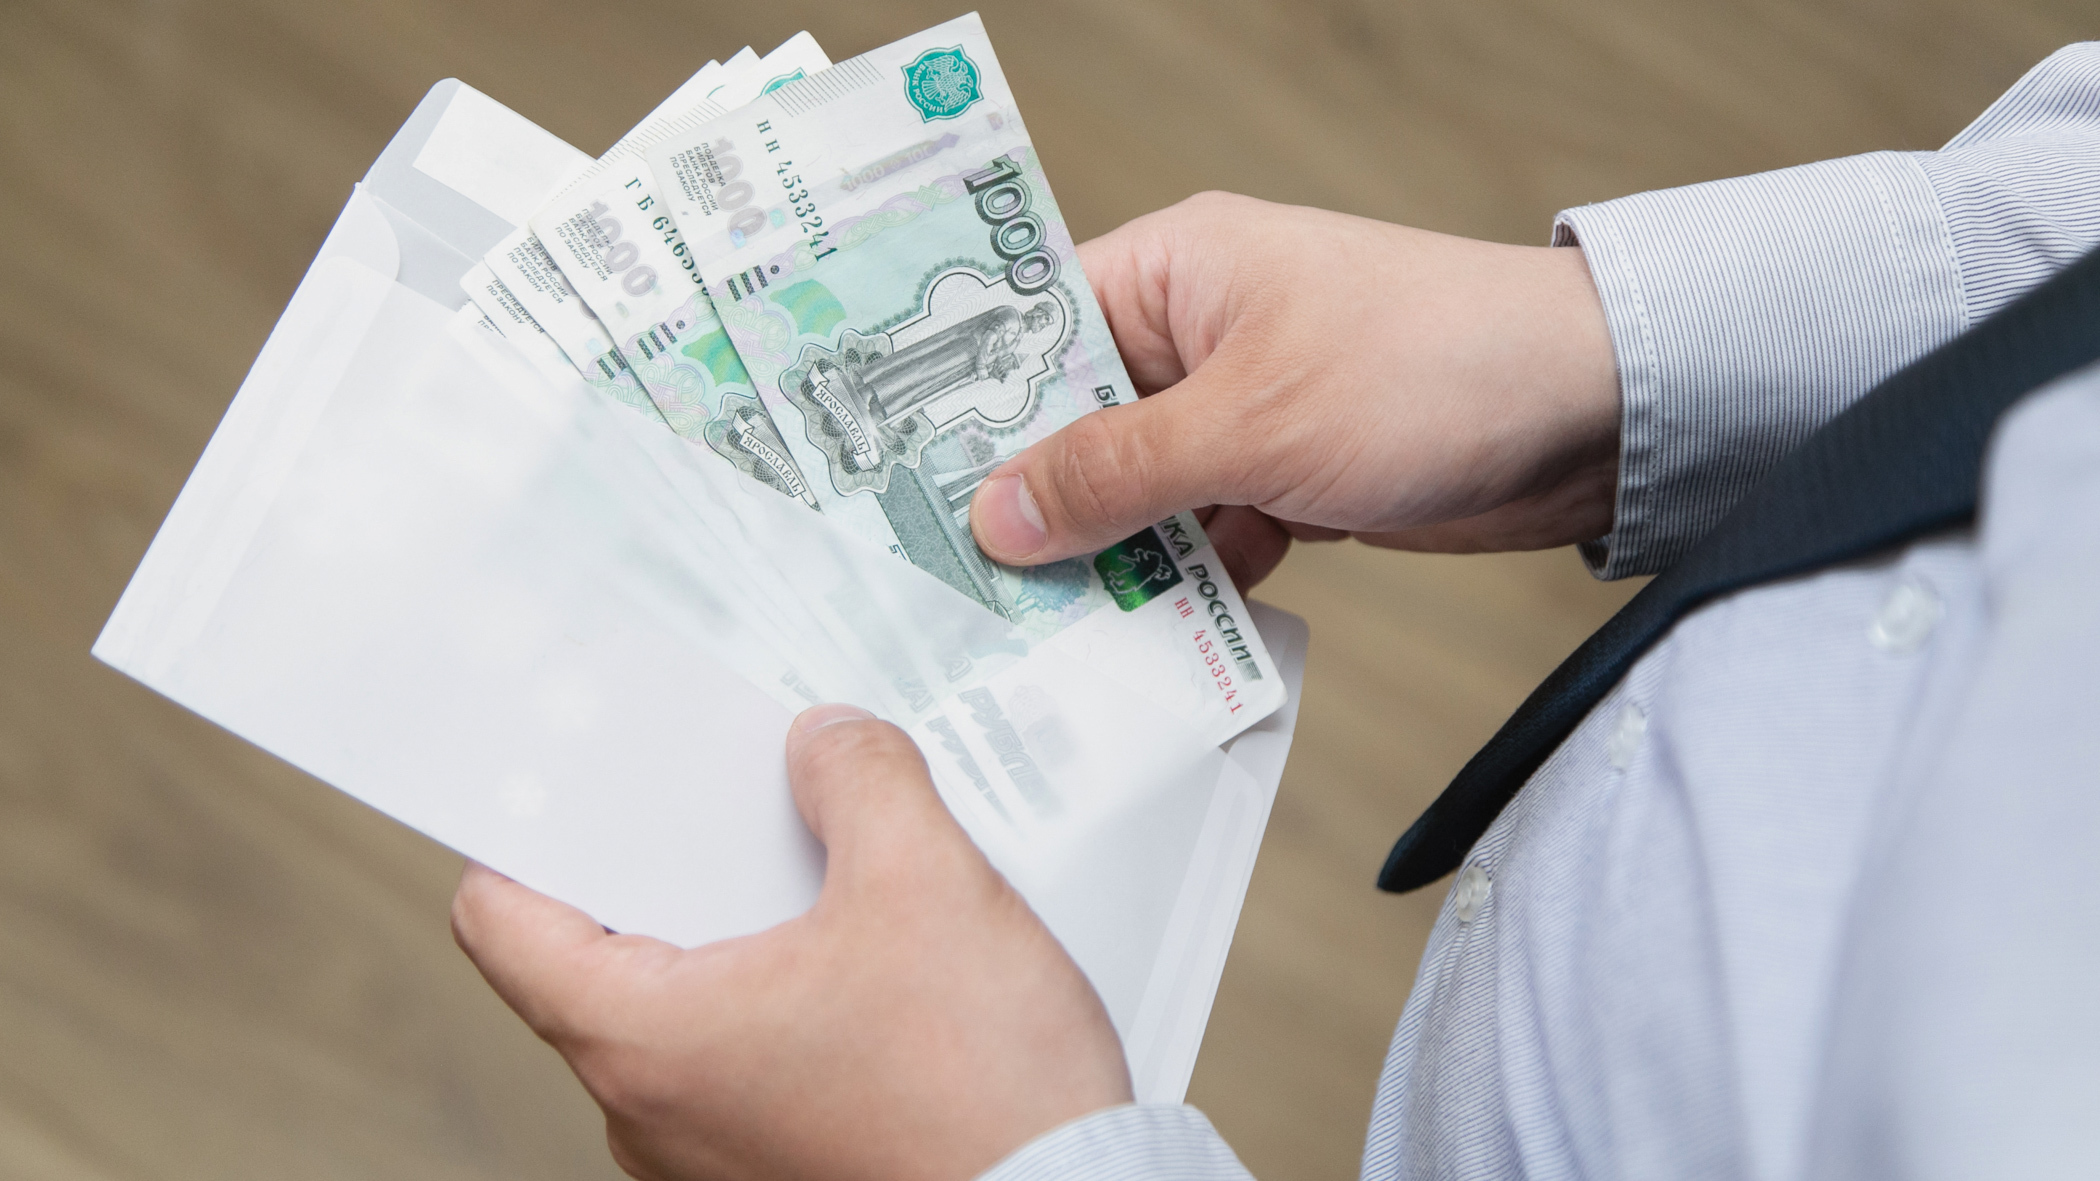 Житель Удмуртии предлагал полицейскому взятку 50 тысяч рублей